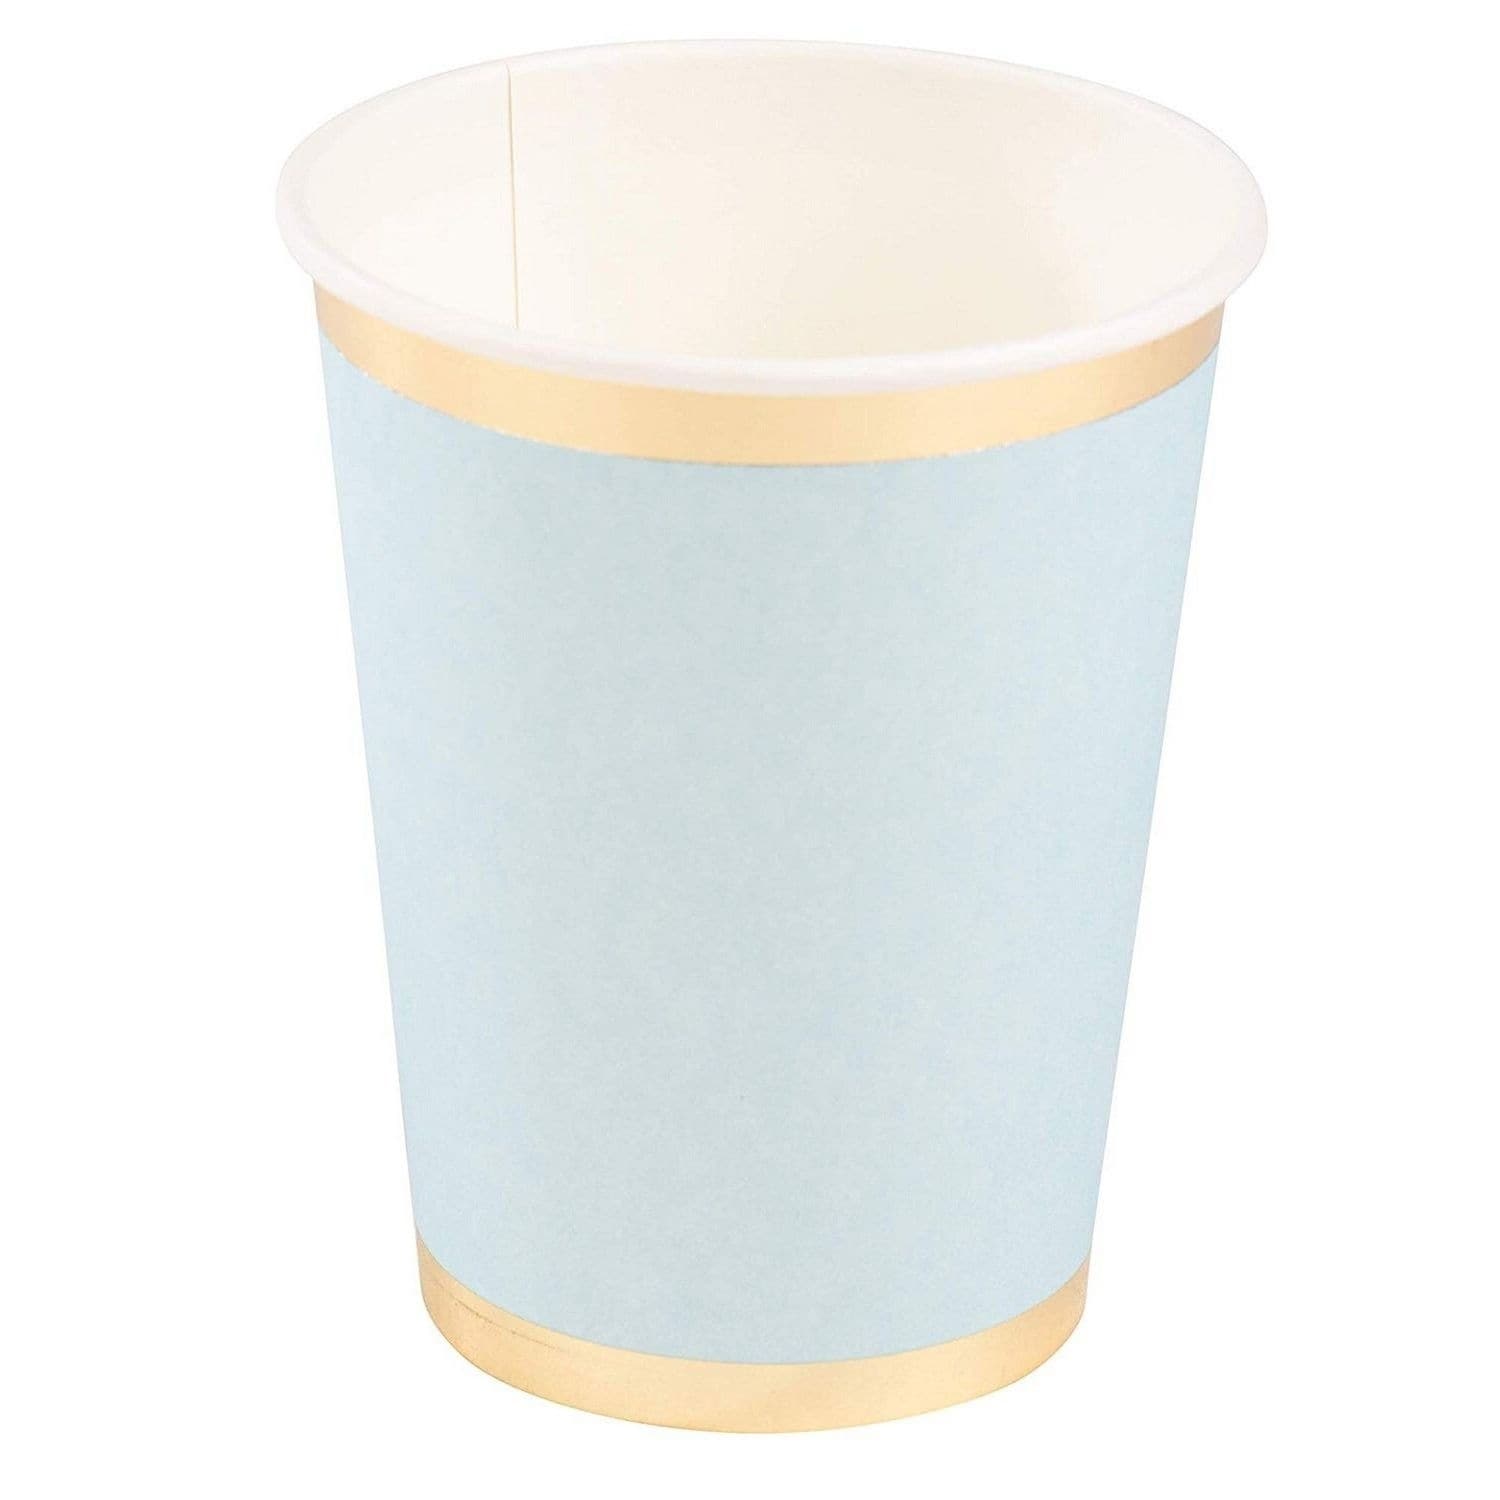  Exquisite Light Blue Paper Cups - 9 oz Disposable